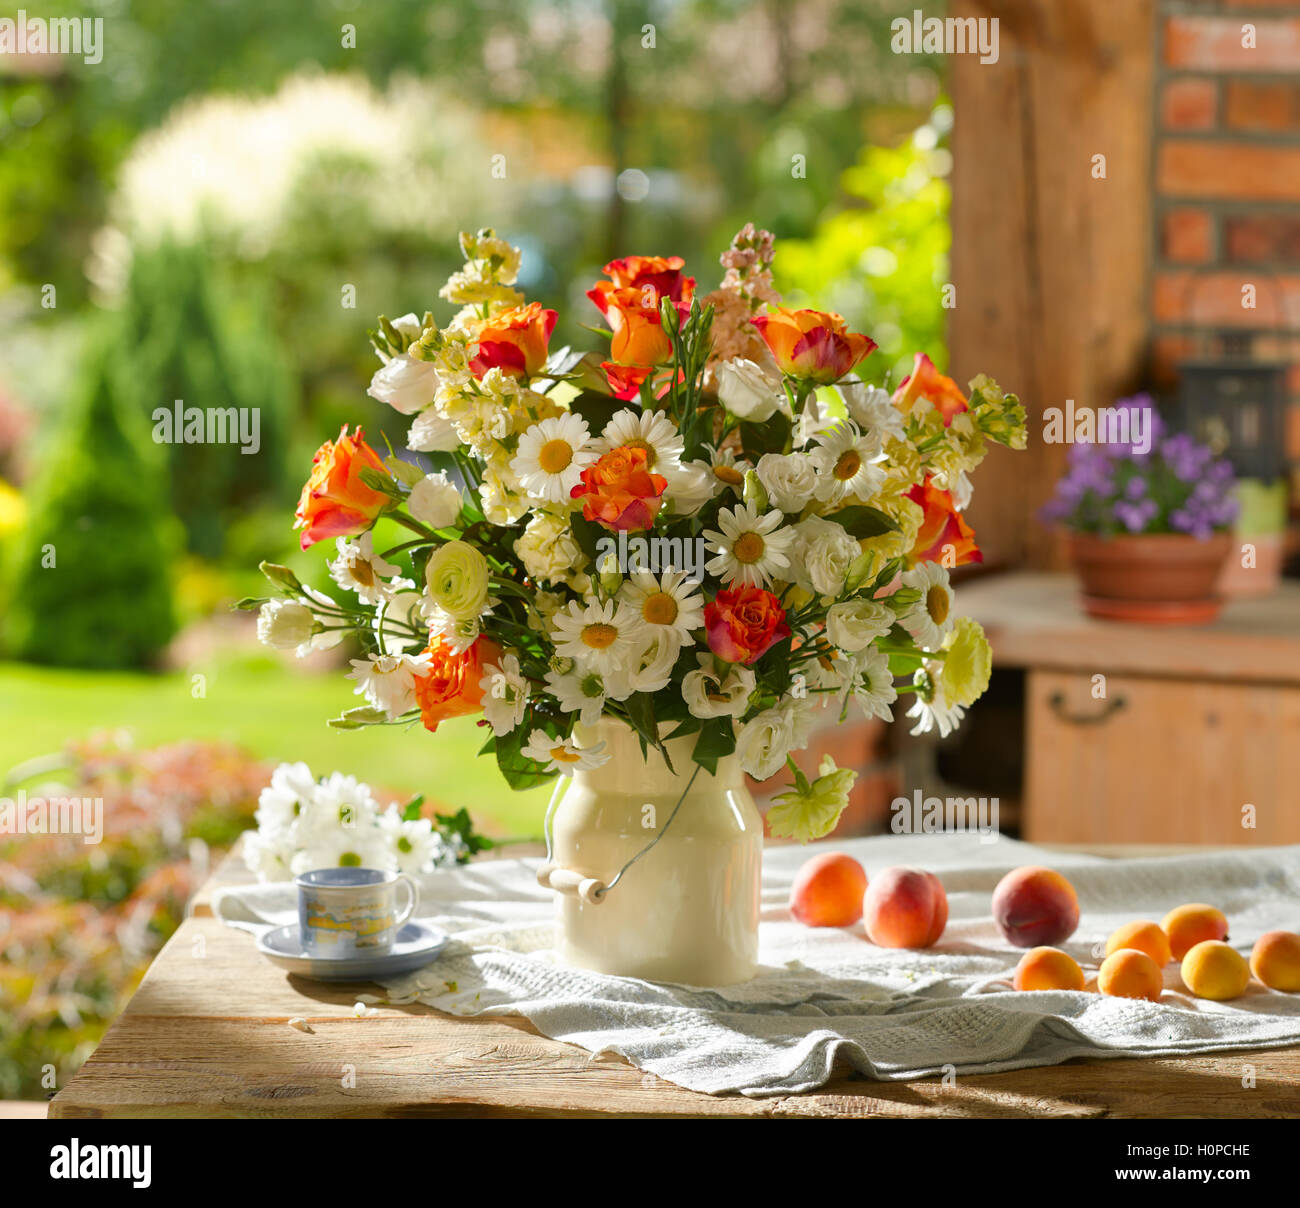 Bouquet di fiori tra cui le rose, margherite e fiori di campo Foto stock -  Alamy